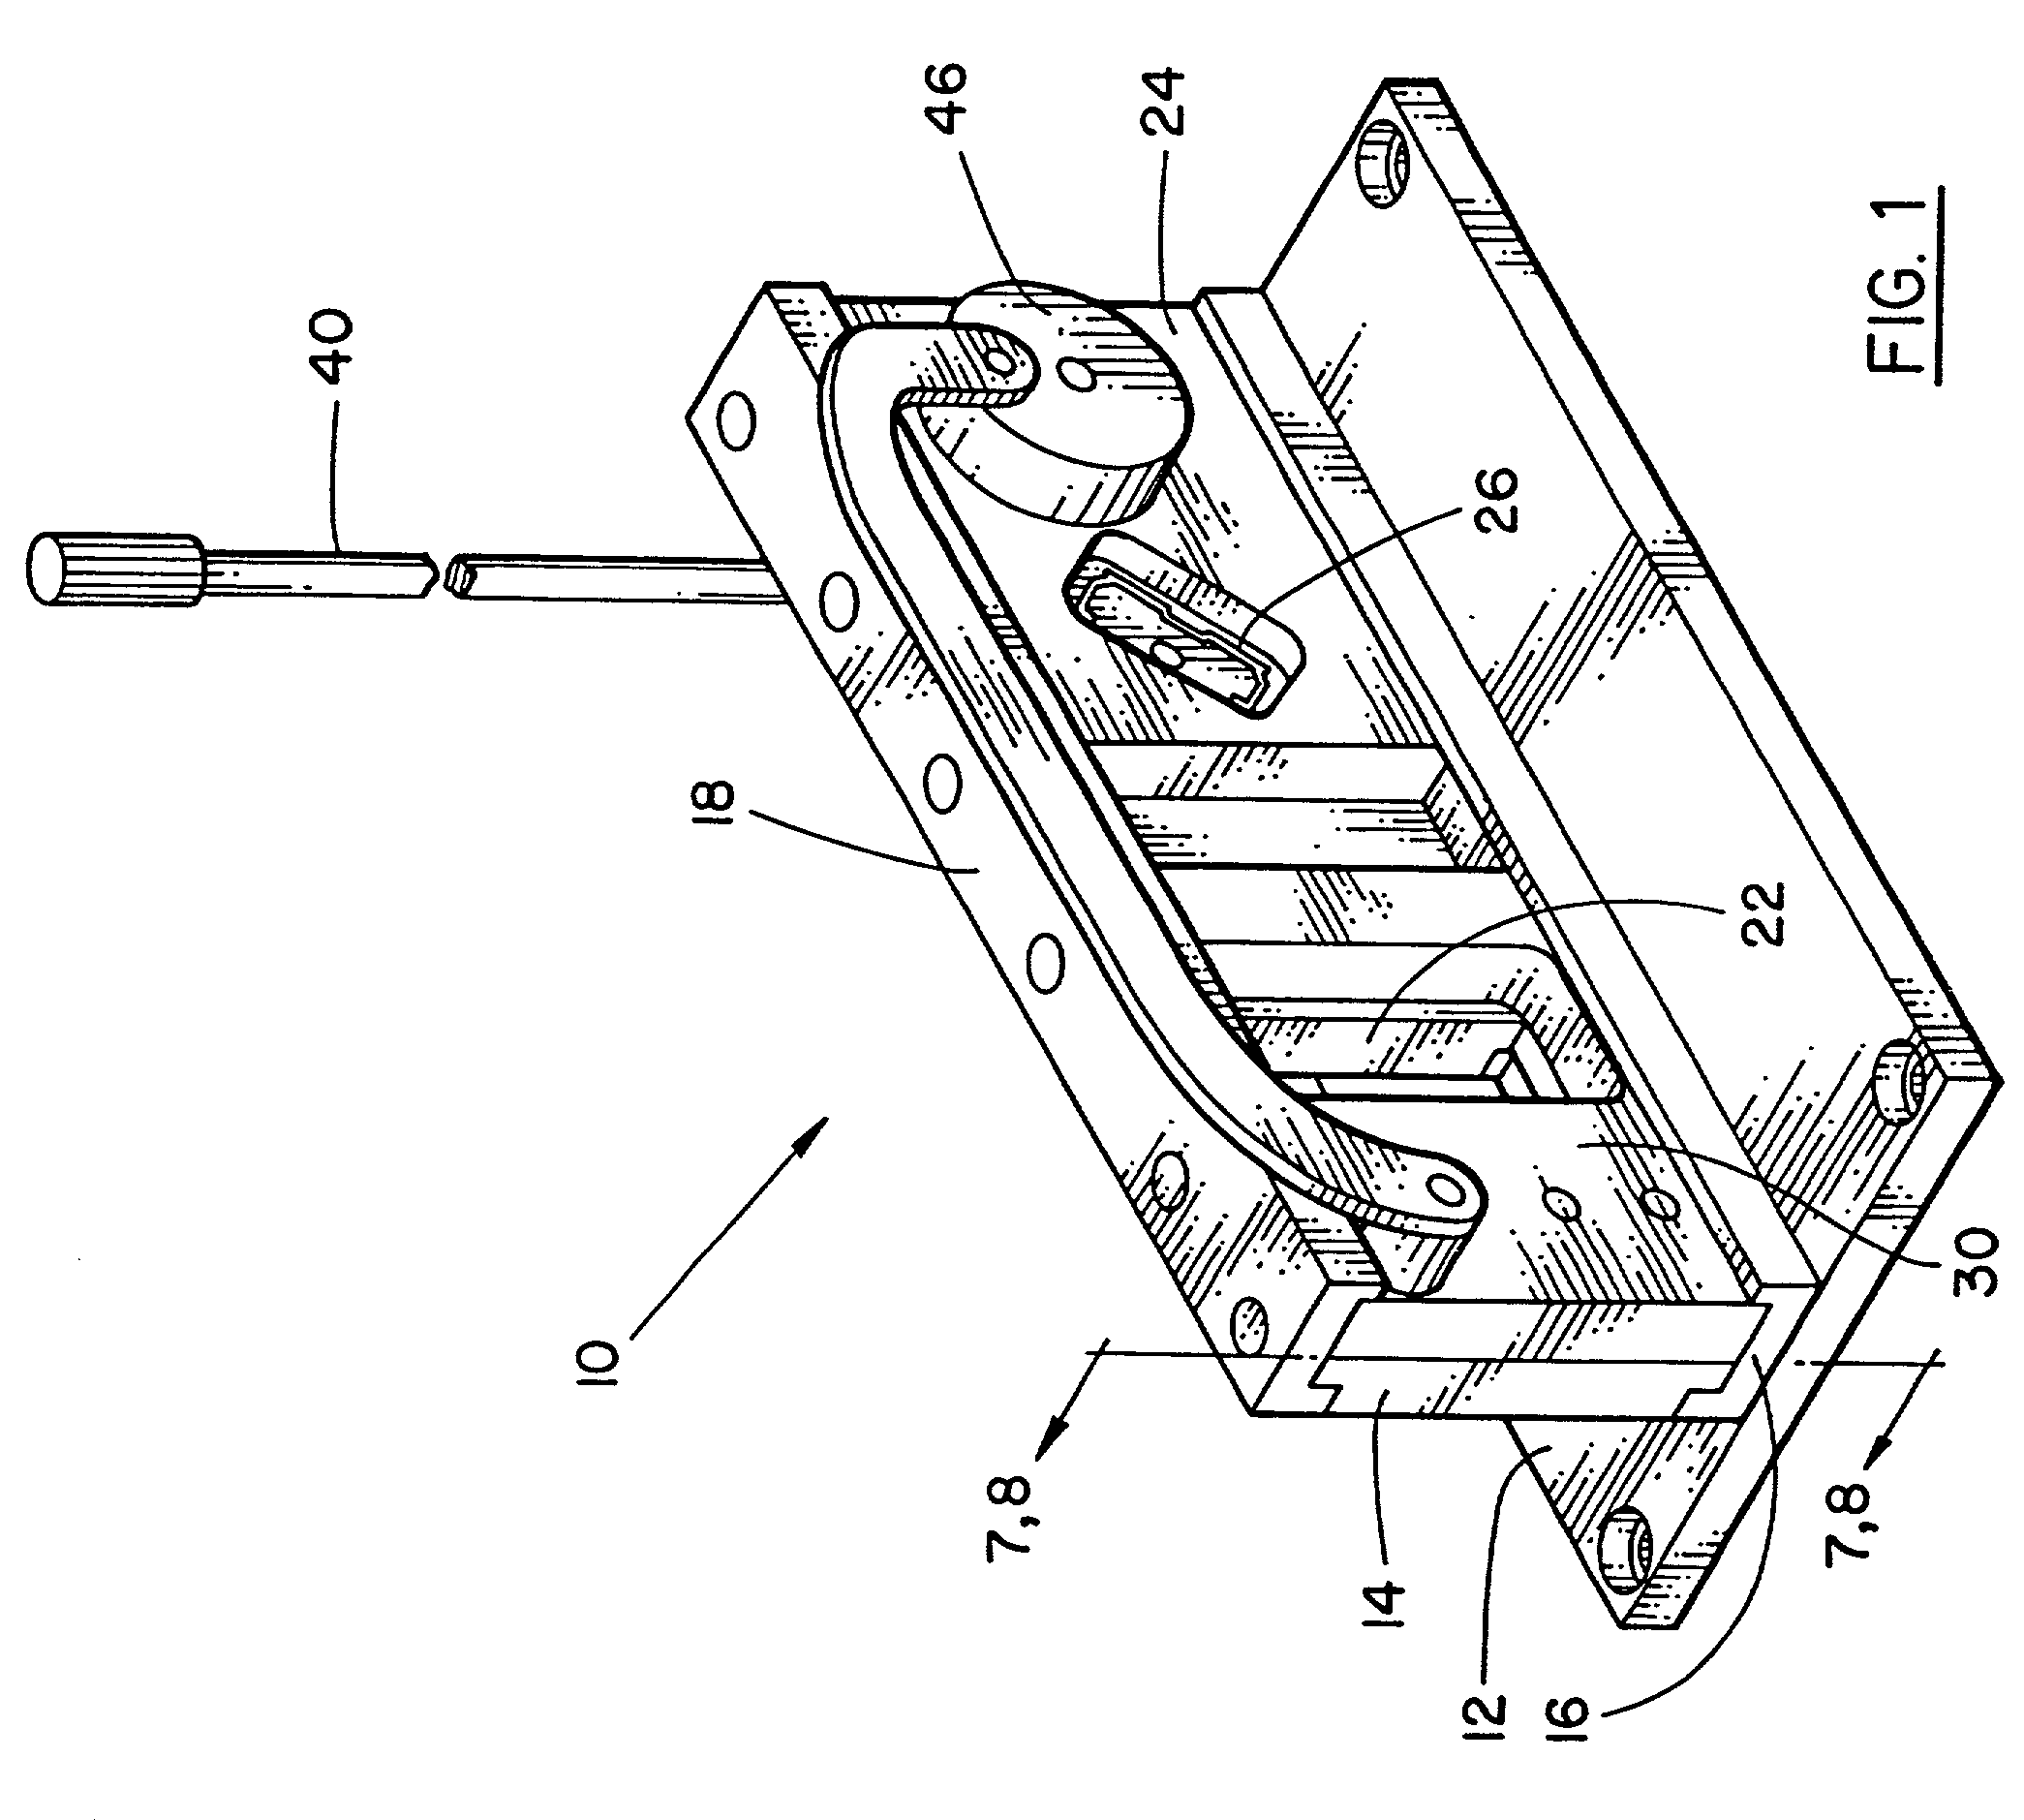 Single plate cut down apparatus